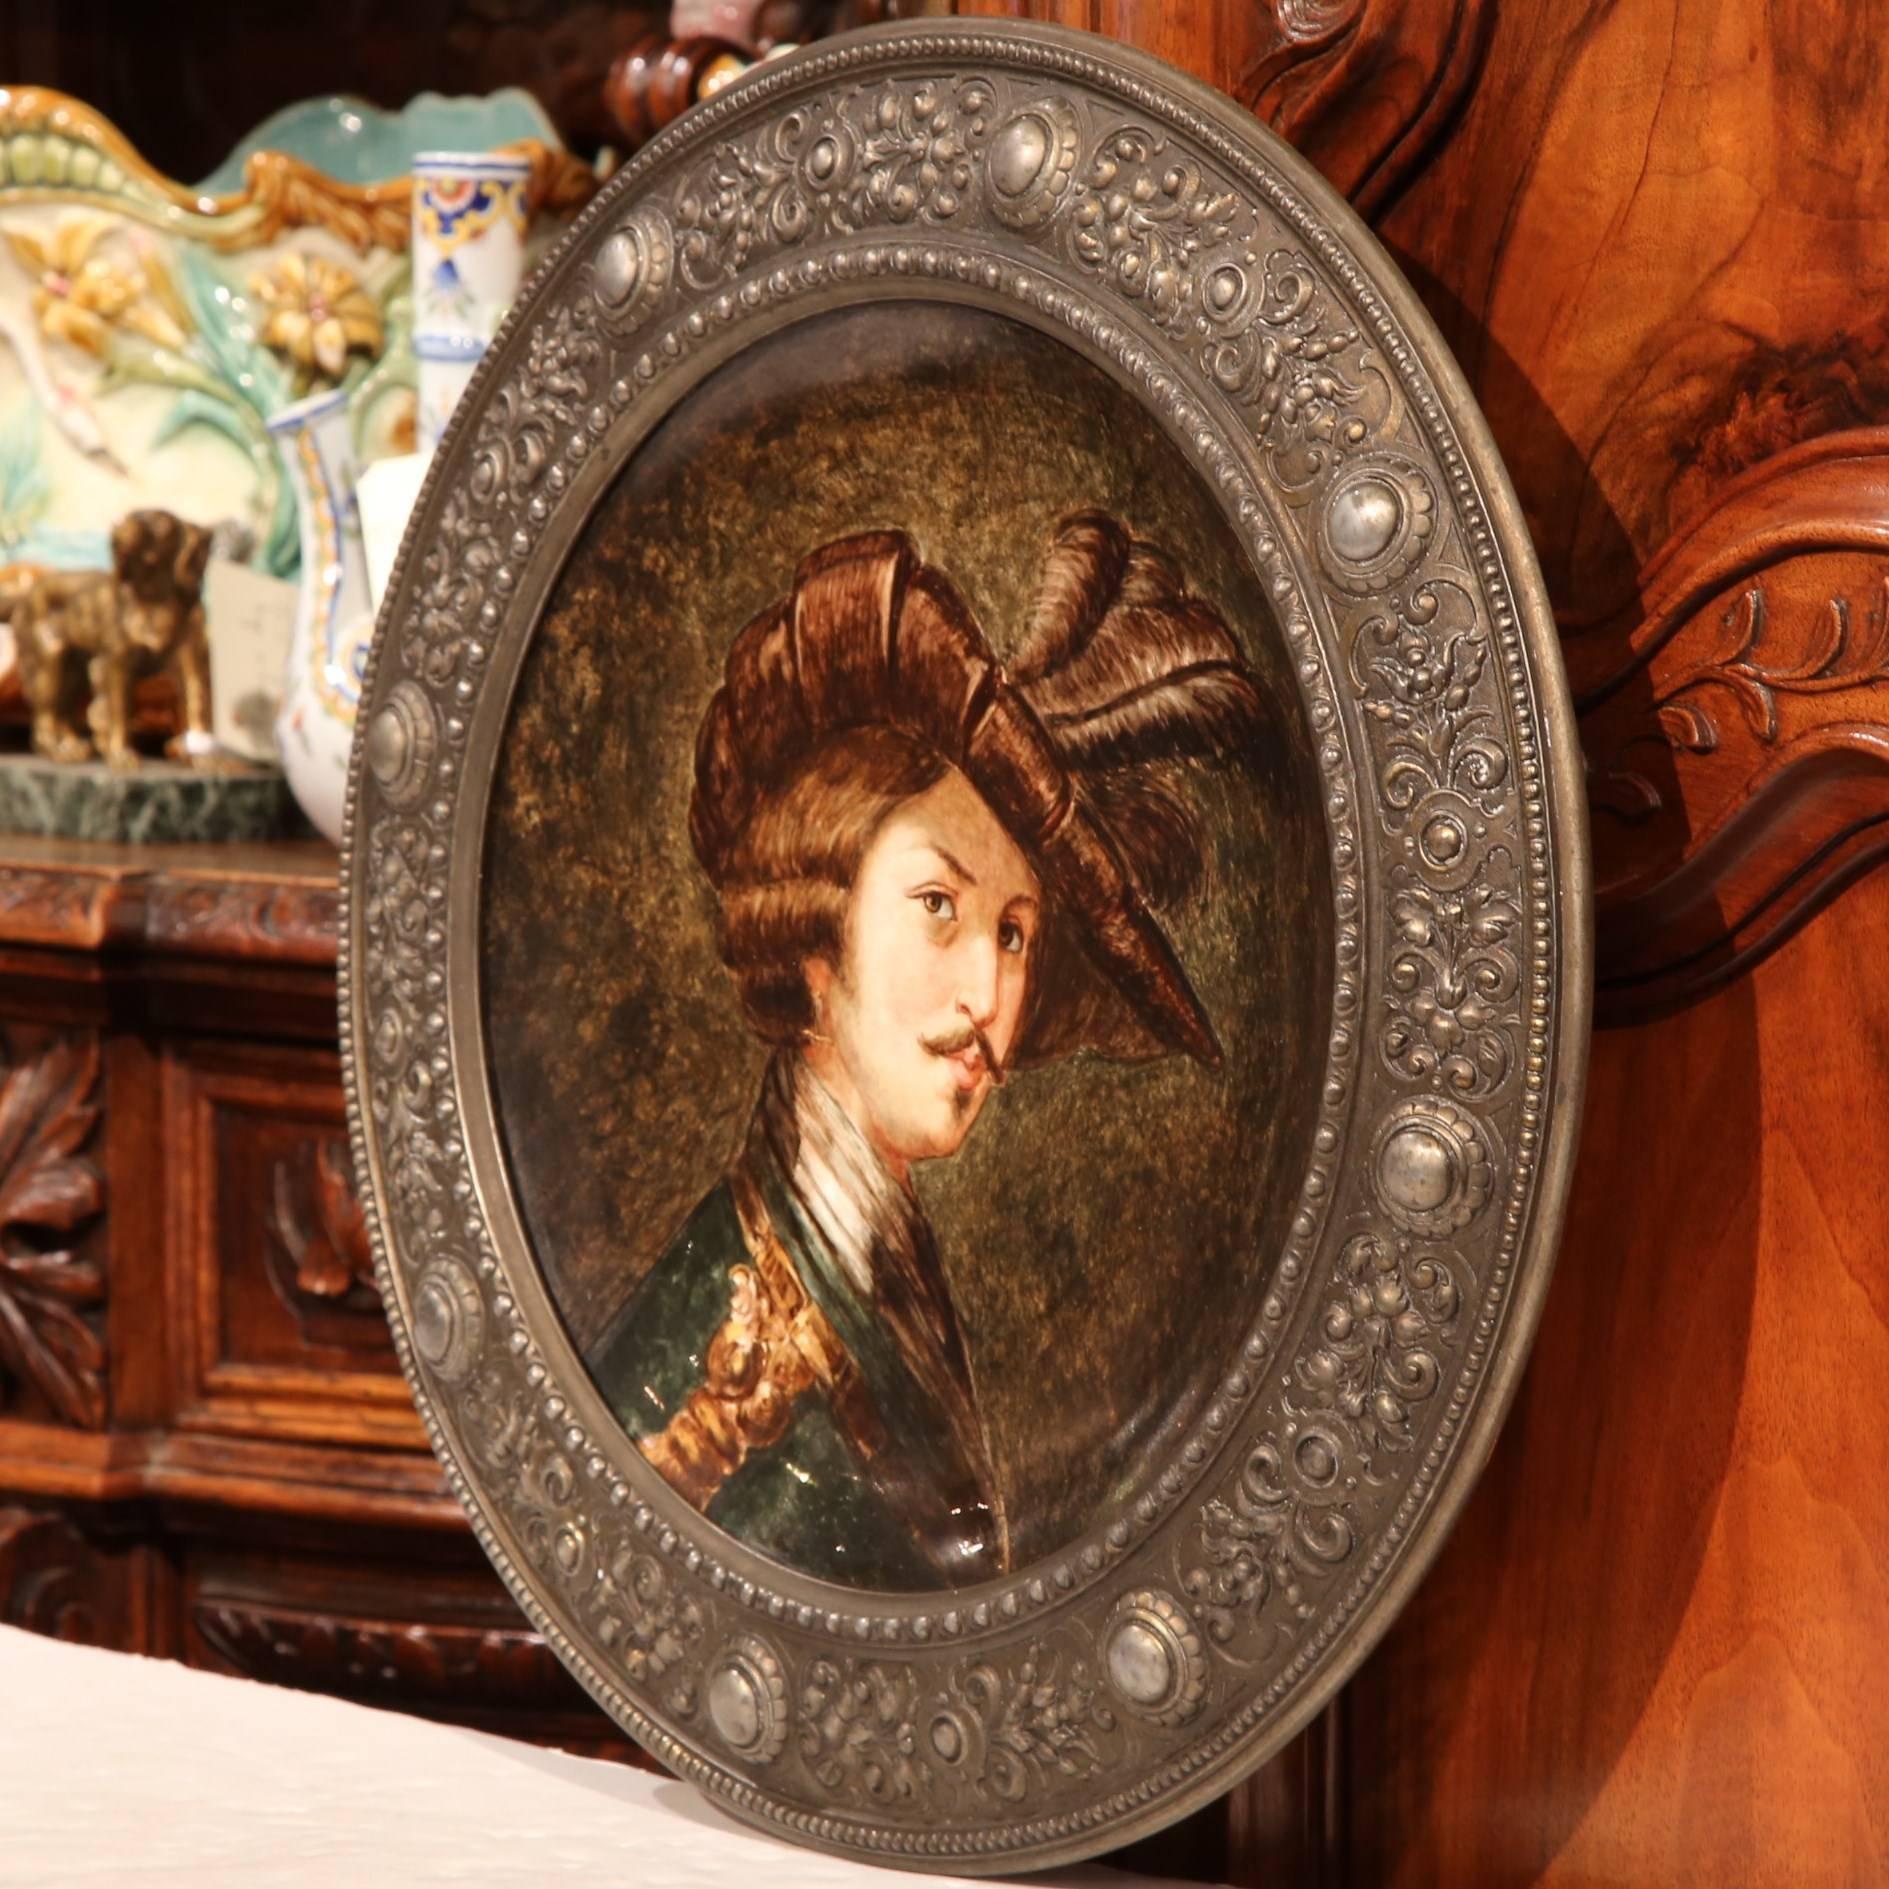 Décorez le bureau d'un homme avec cette grande assiette en porcelaine peinte à la main. Fabriquée en Allemagne, vers 1880 et de forme ronde, l'assiette en céramique peinte représente le portrait d'un homme habillé de vêtements d'époque ornés.